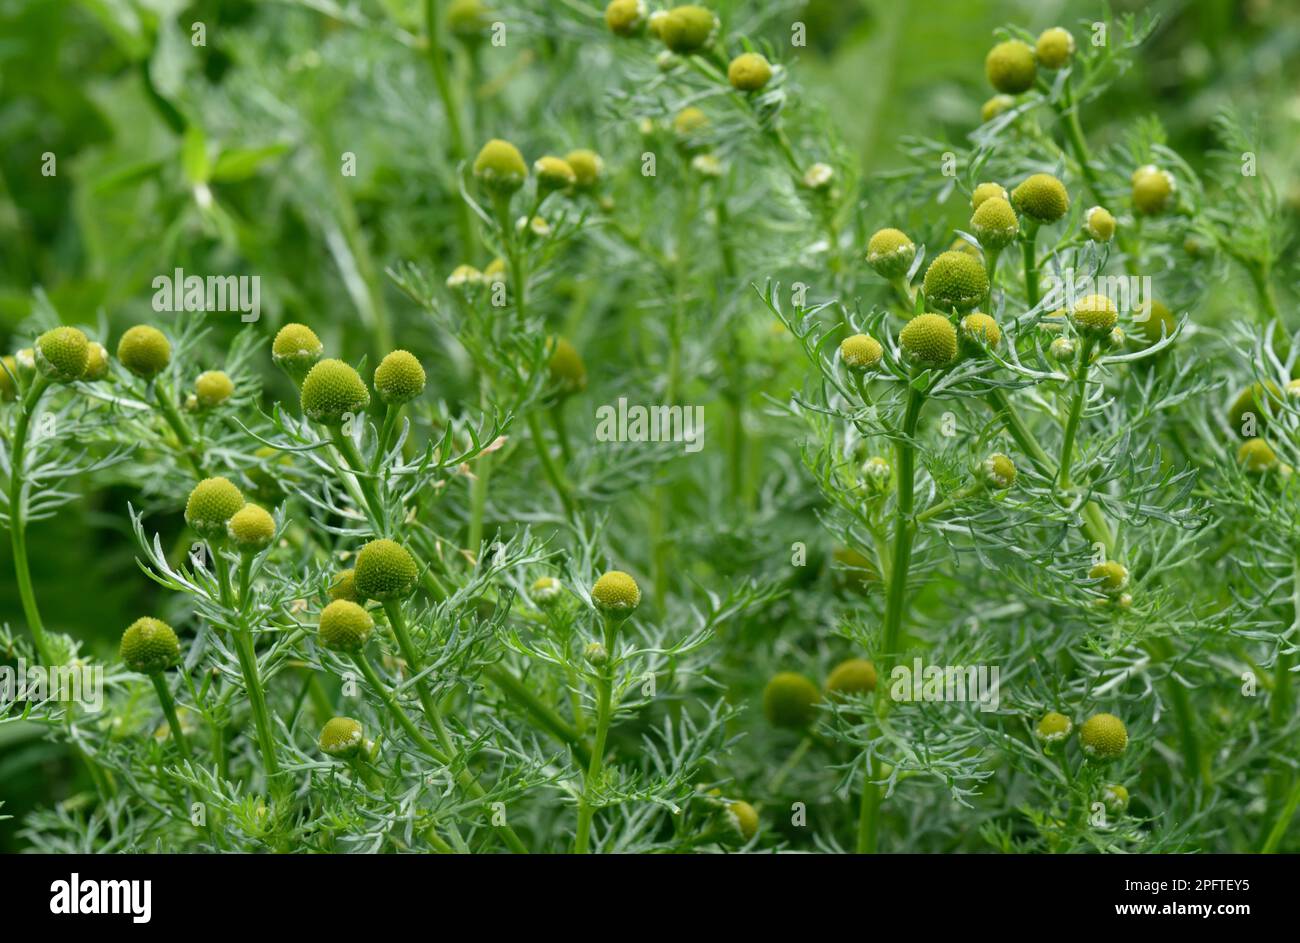 Comune matricario (Matricaria discoidea), fioritura annuale erbacce arabili su terreno di falda, Berkshire, Inghilterra, Regno Unito Foto Stock